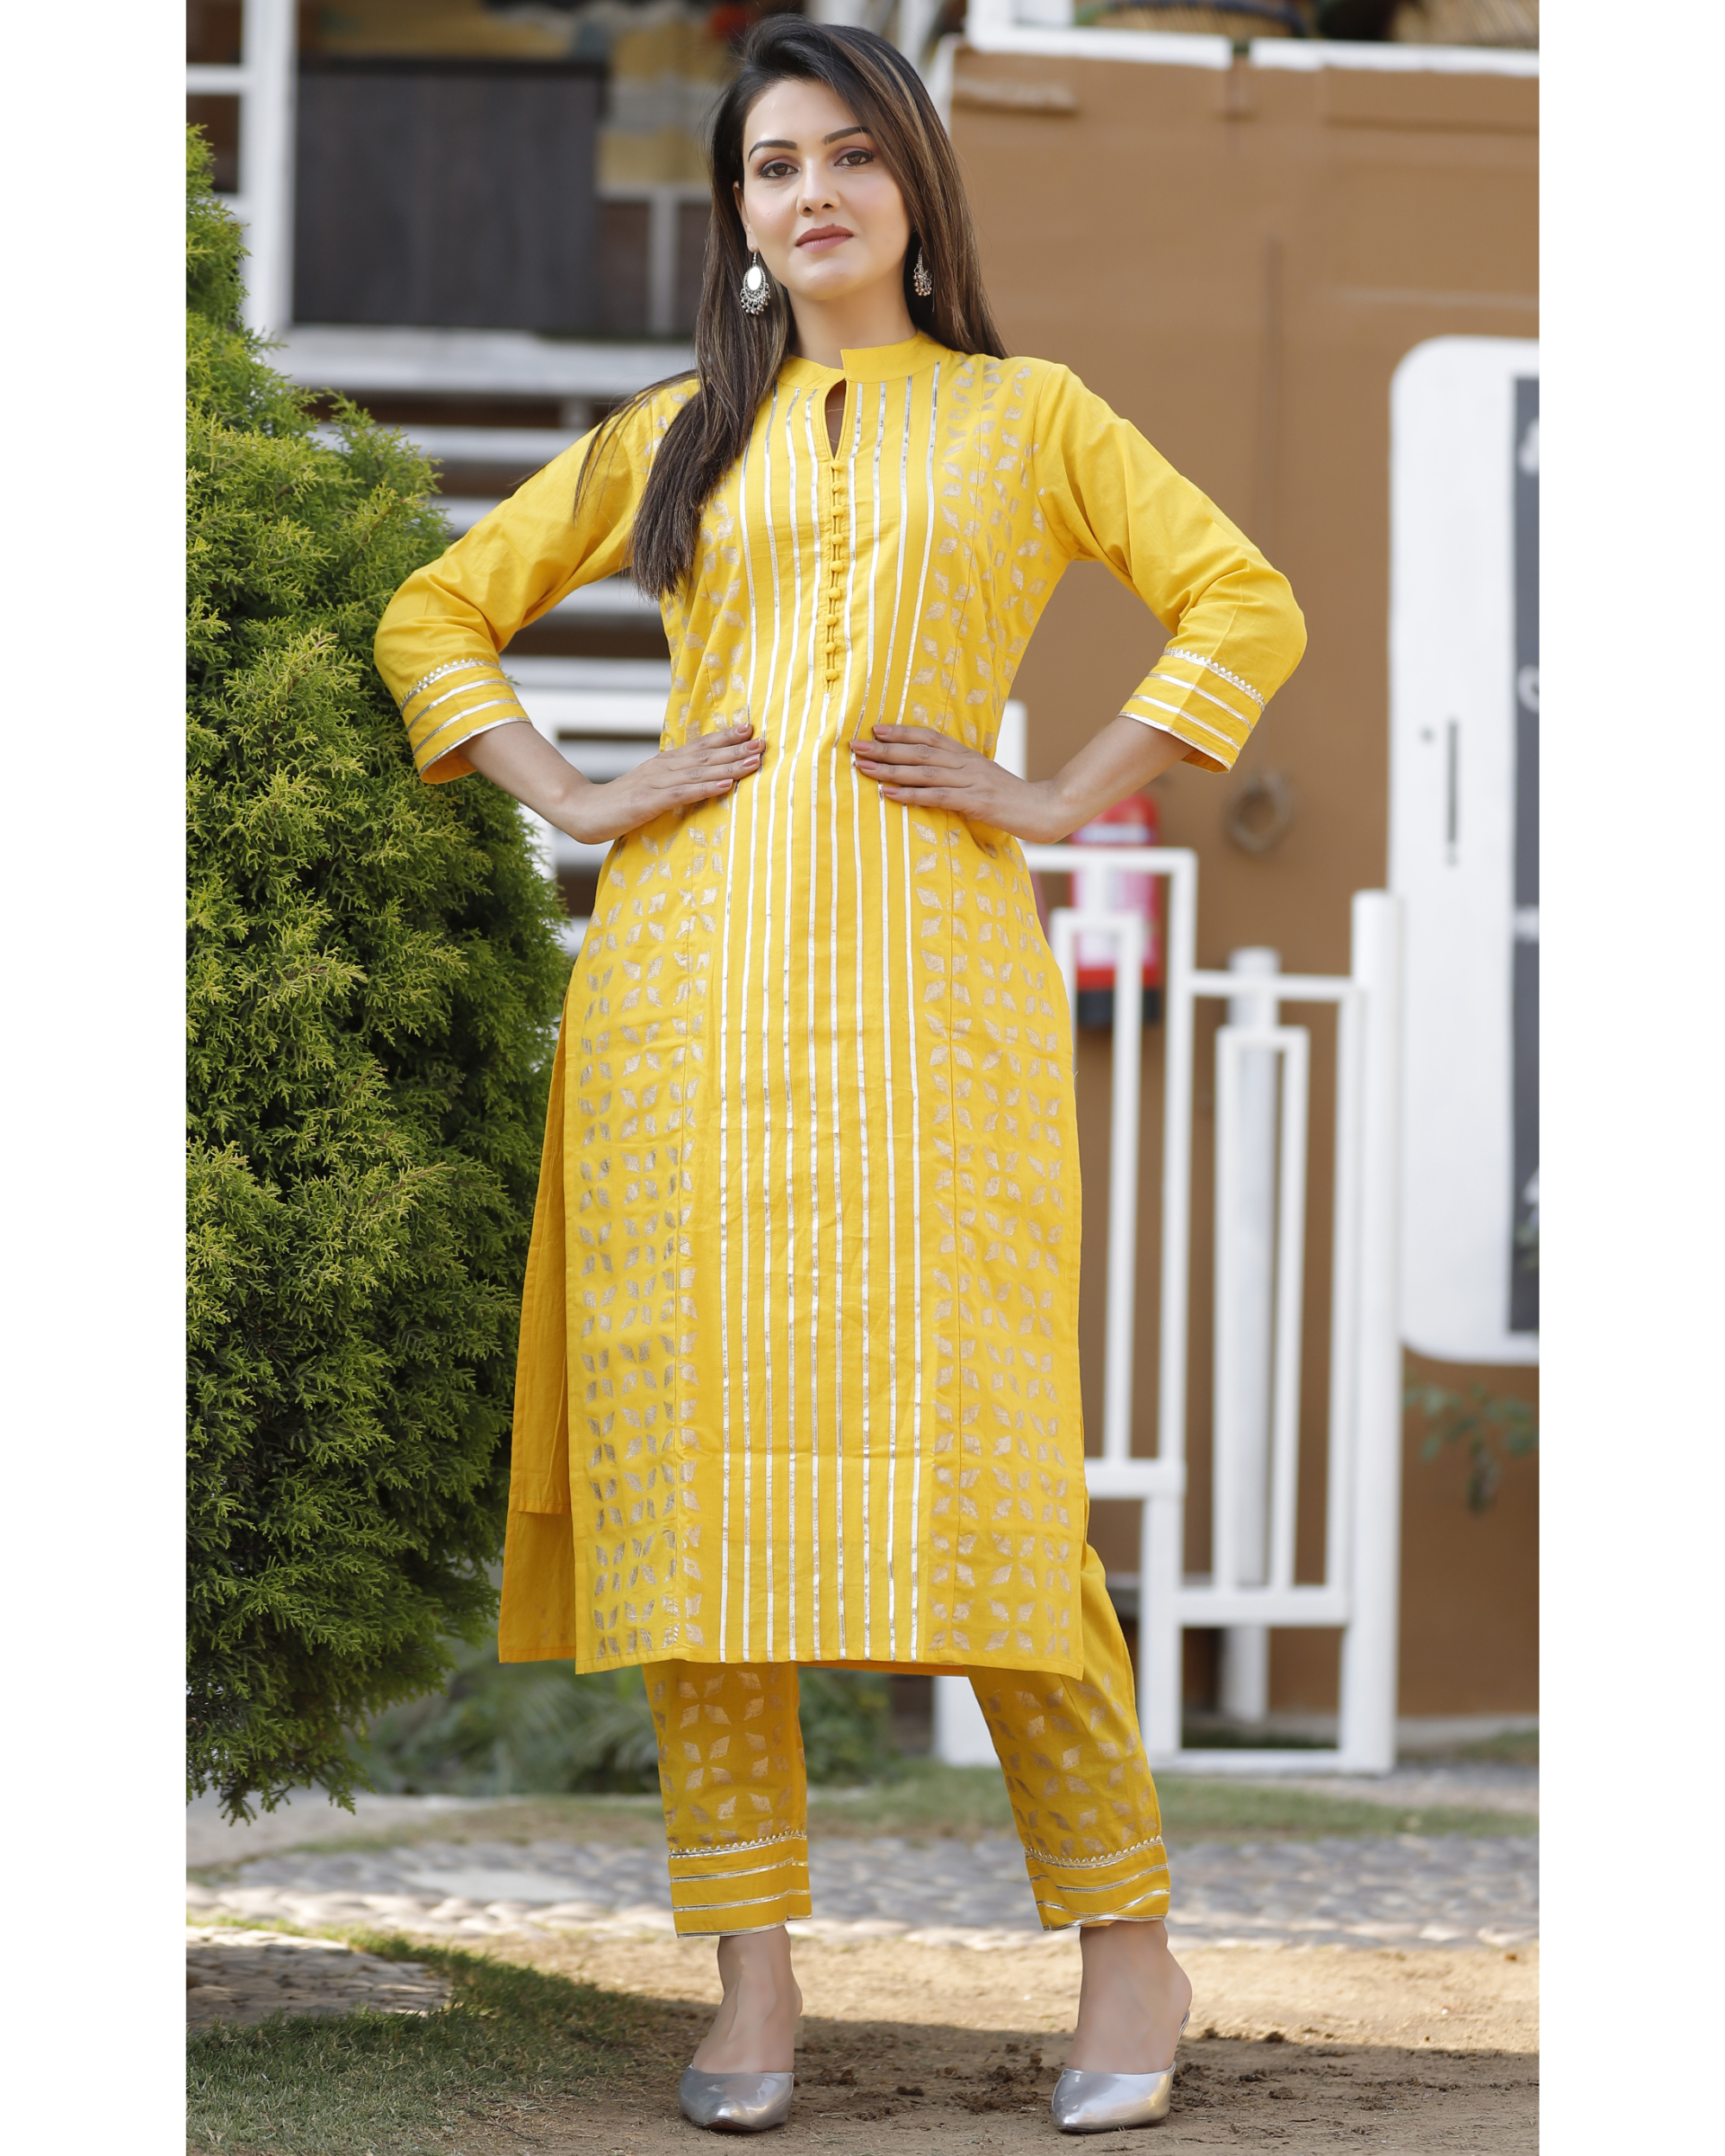 IKK998 yellow cotton kurti pant set with gota patti mirror work